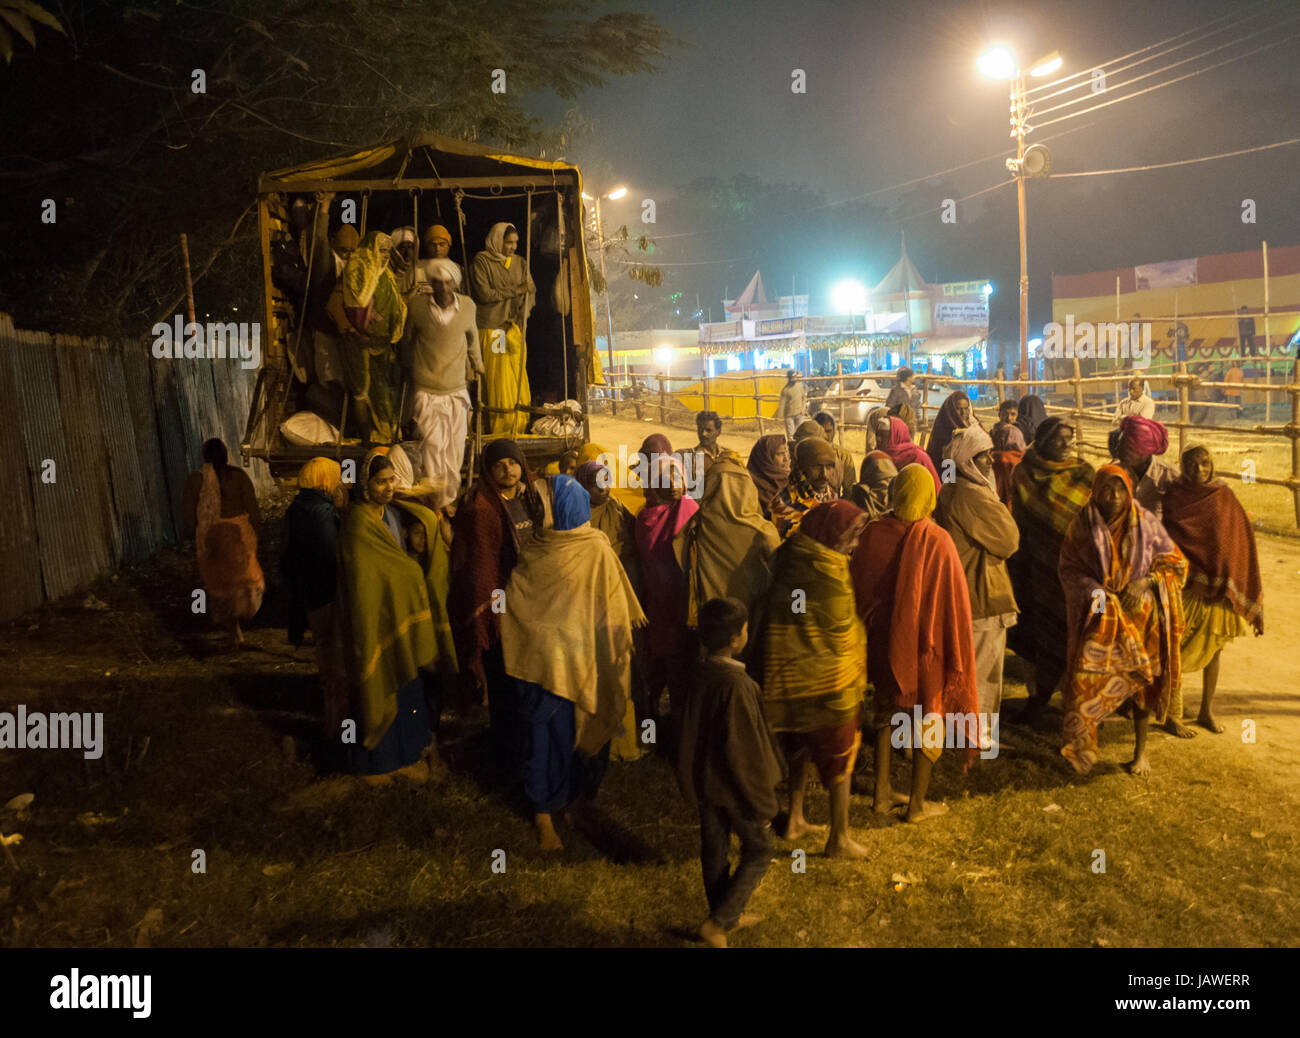 BABUGHAT, Kolkata, WEST BENGAL / INDE - 9ème Janvier 2013 : passionnés d'Hindu arrivant le 09 janvier 2013 Camp de transit en Babughat, Kolkata. Ils sont sur leur chemin à Gangasagar (Sagar) . Banque D'Images